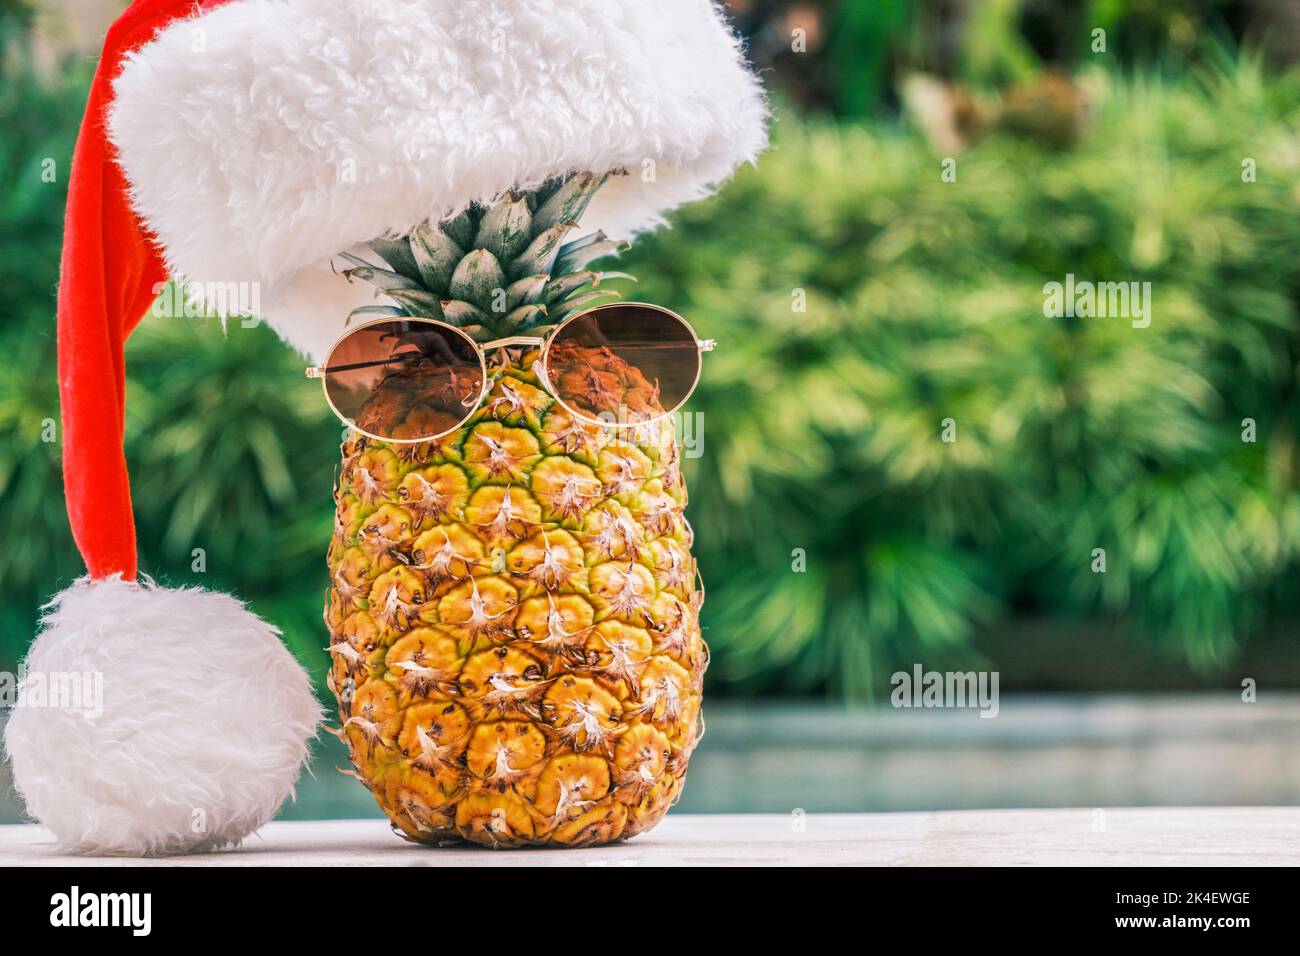 Lustige Ananas mit Sonnenbrille und Weihnachtsmann Hut gegen Pool und tropische Pflanzen bei sonnigem Wetter in den Tropen. Weihnachten in den Tropen. Winter Stockfoto